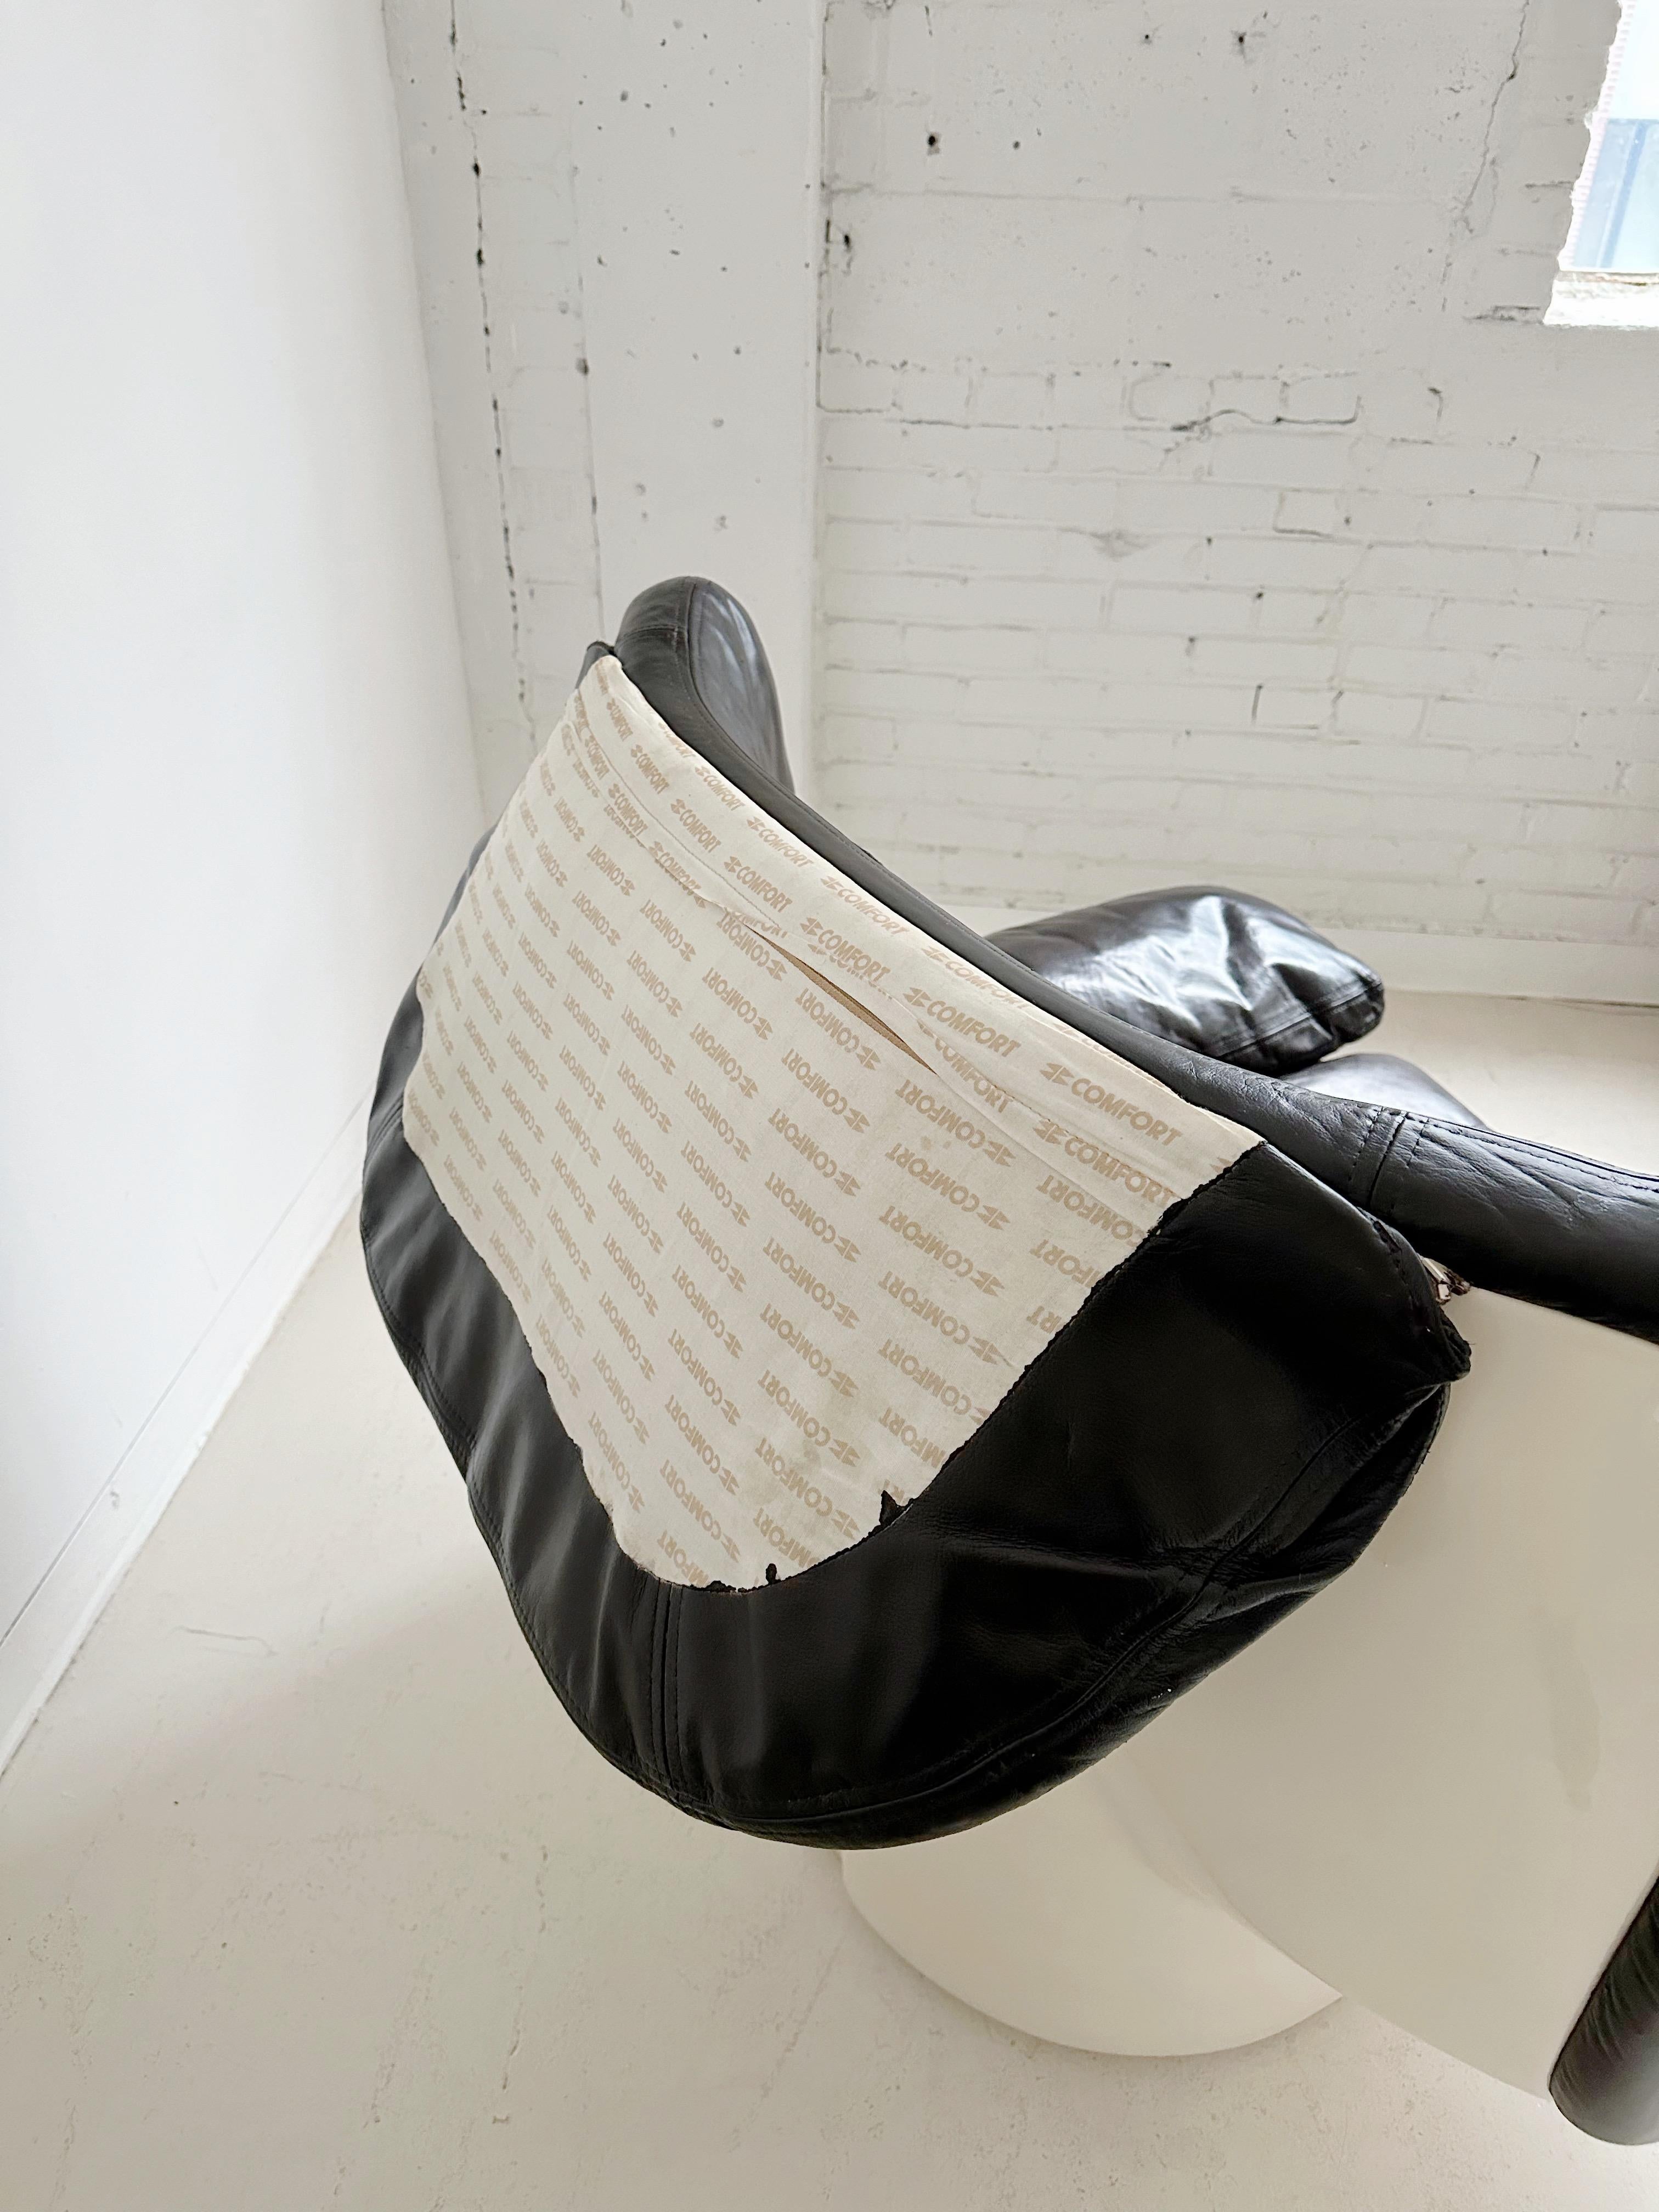 IL POLTRONE Lounge Chair von Ammanati & Vitelli für Comfort, 70er Jahre (Ende des 20. Jahrhunderts)